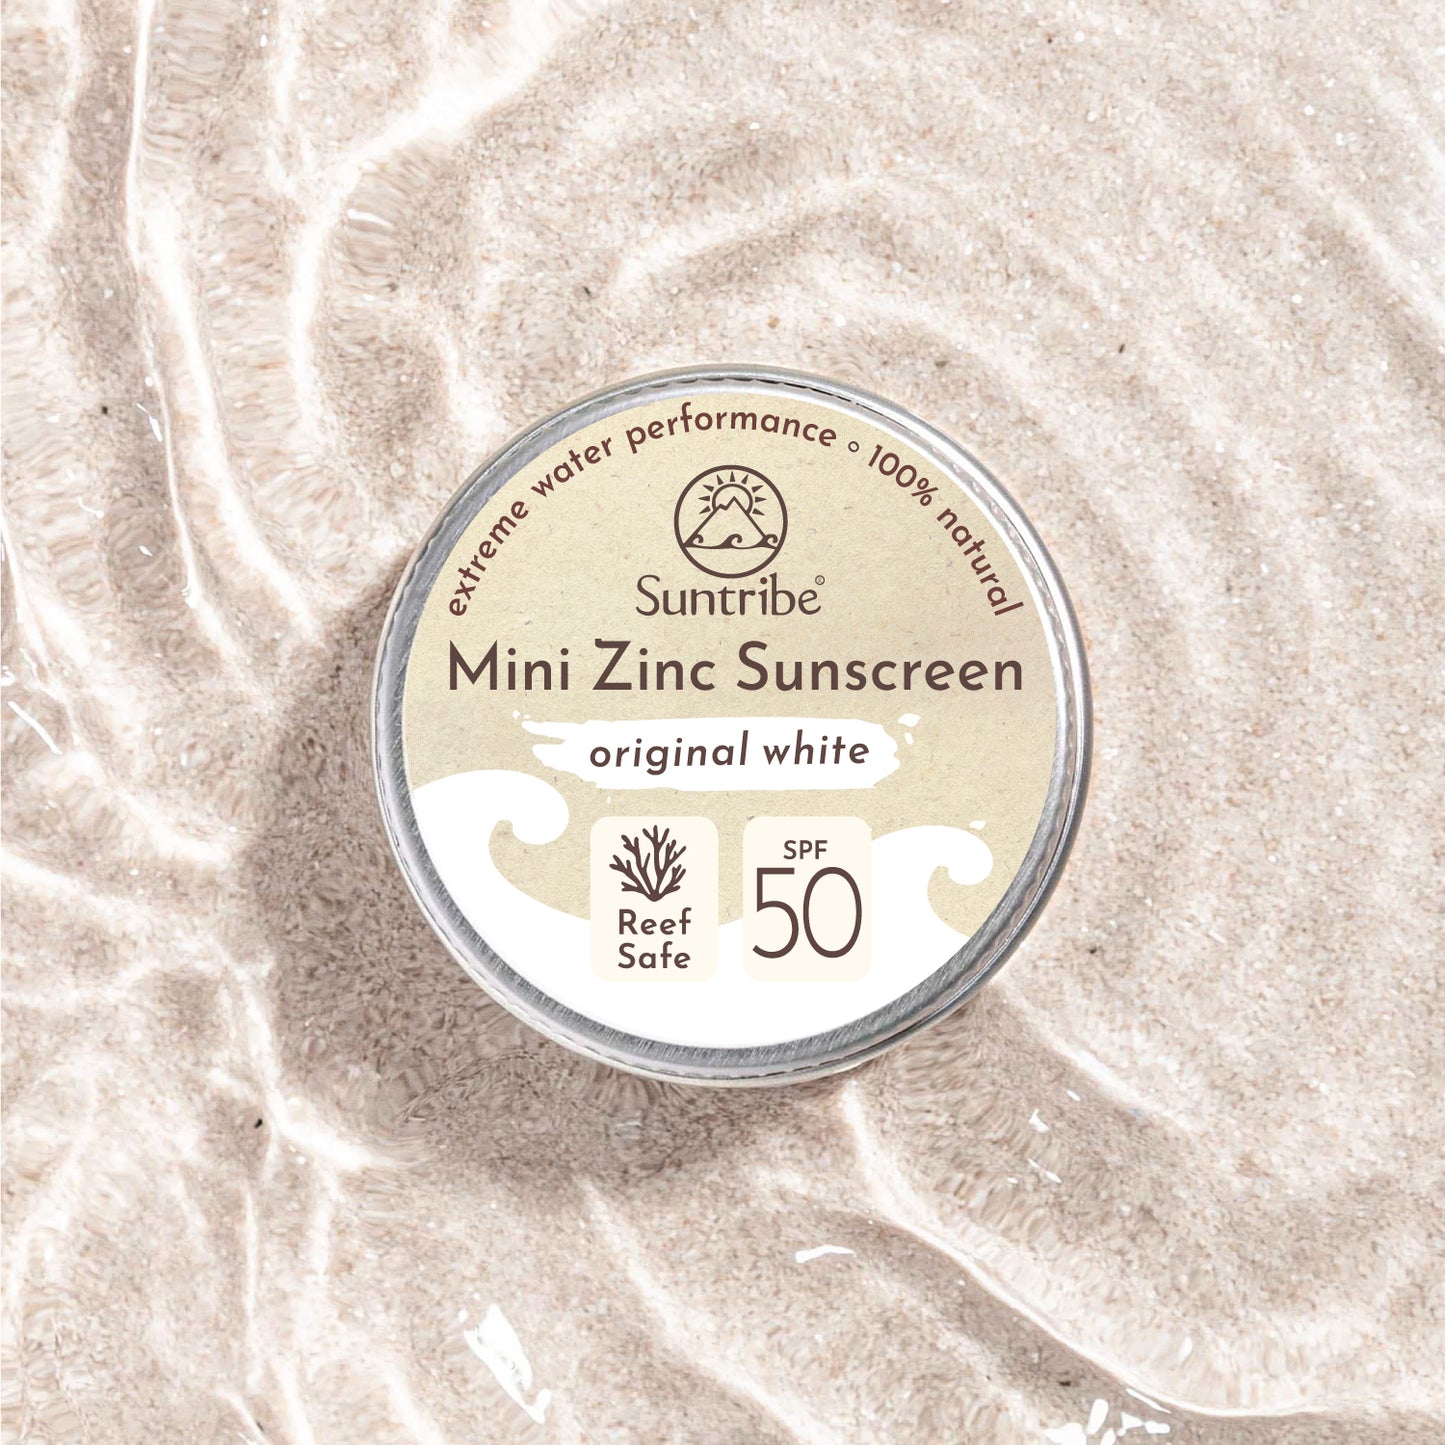 Suntribe Face & Sport Zinc Sunscreen 15g Tin - SPF 50 (White)